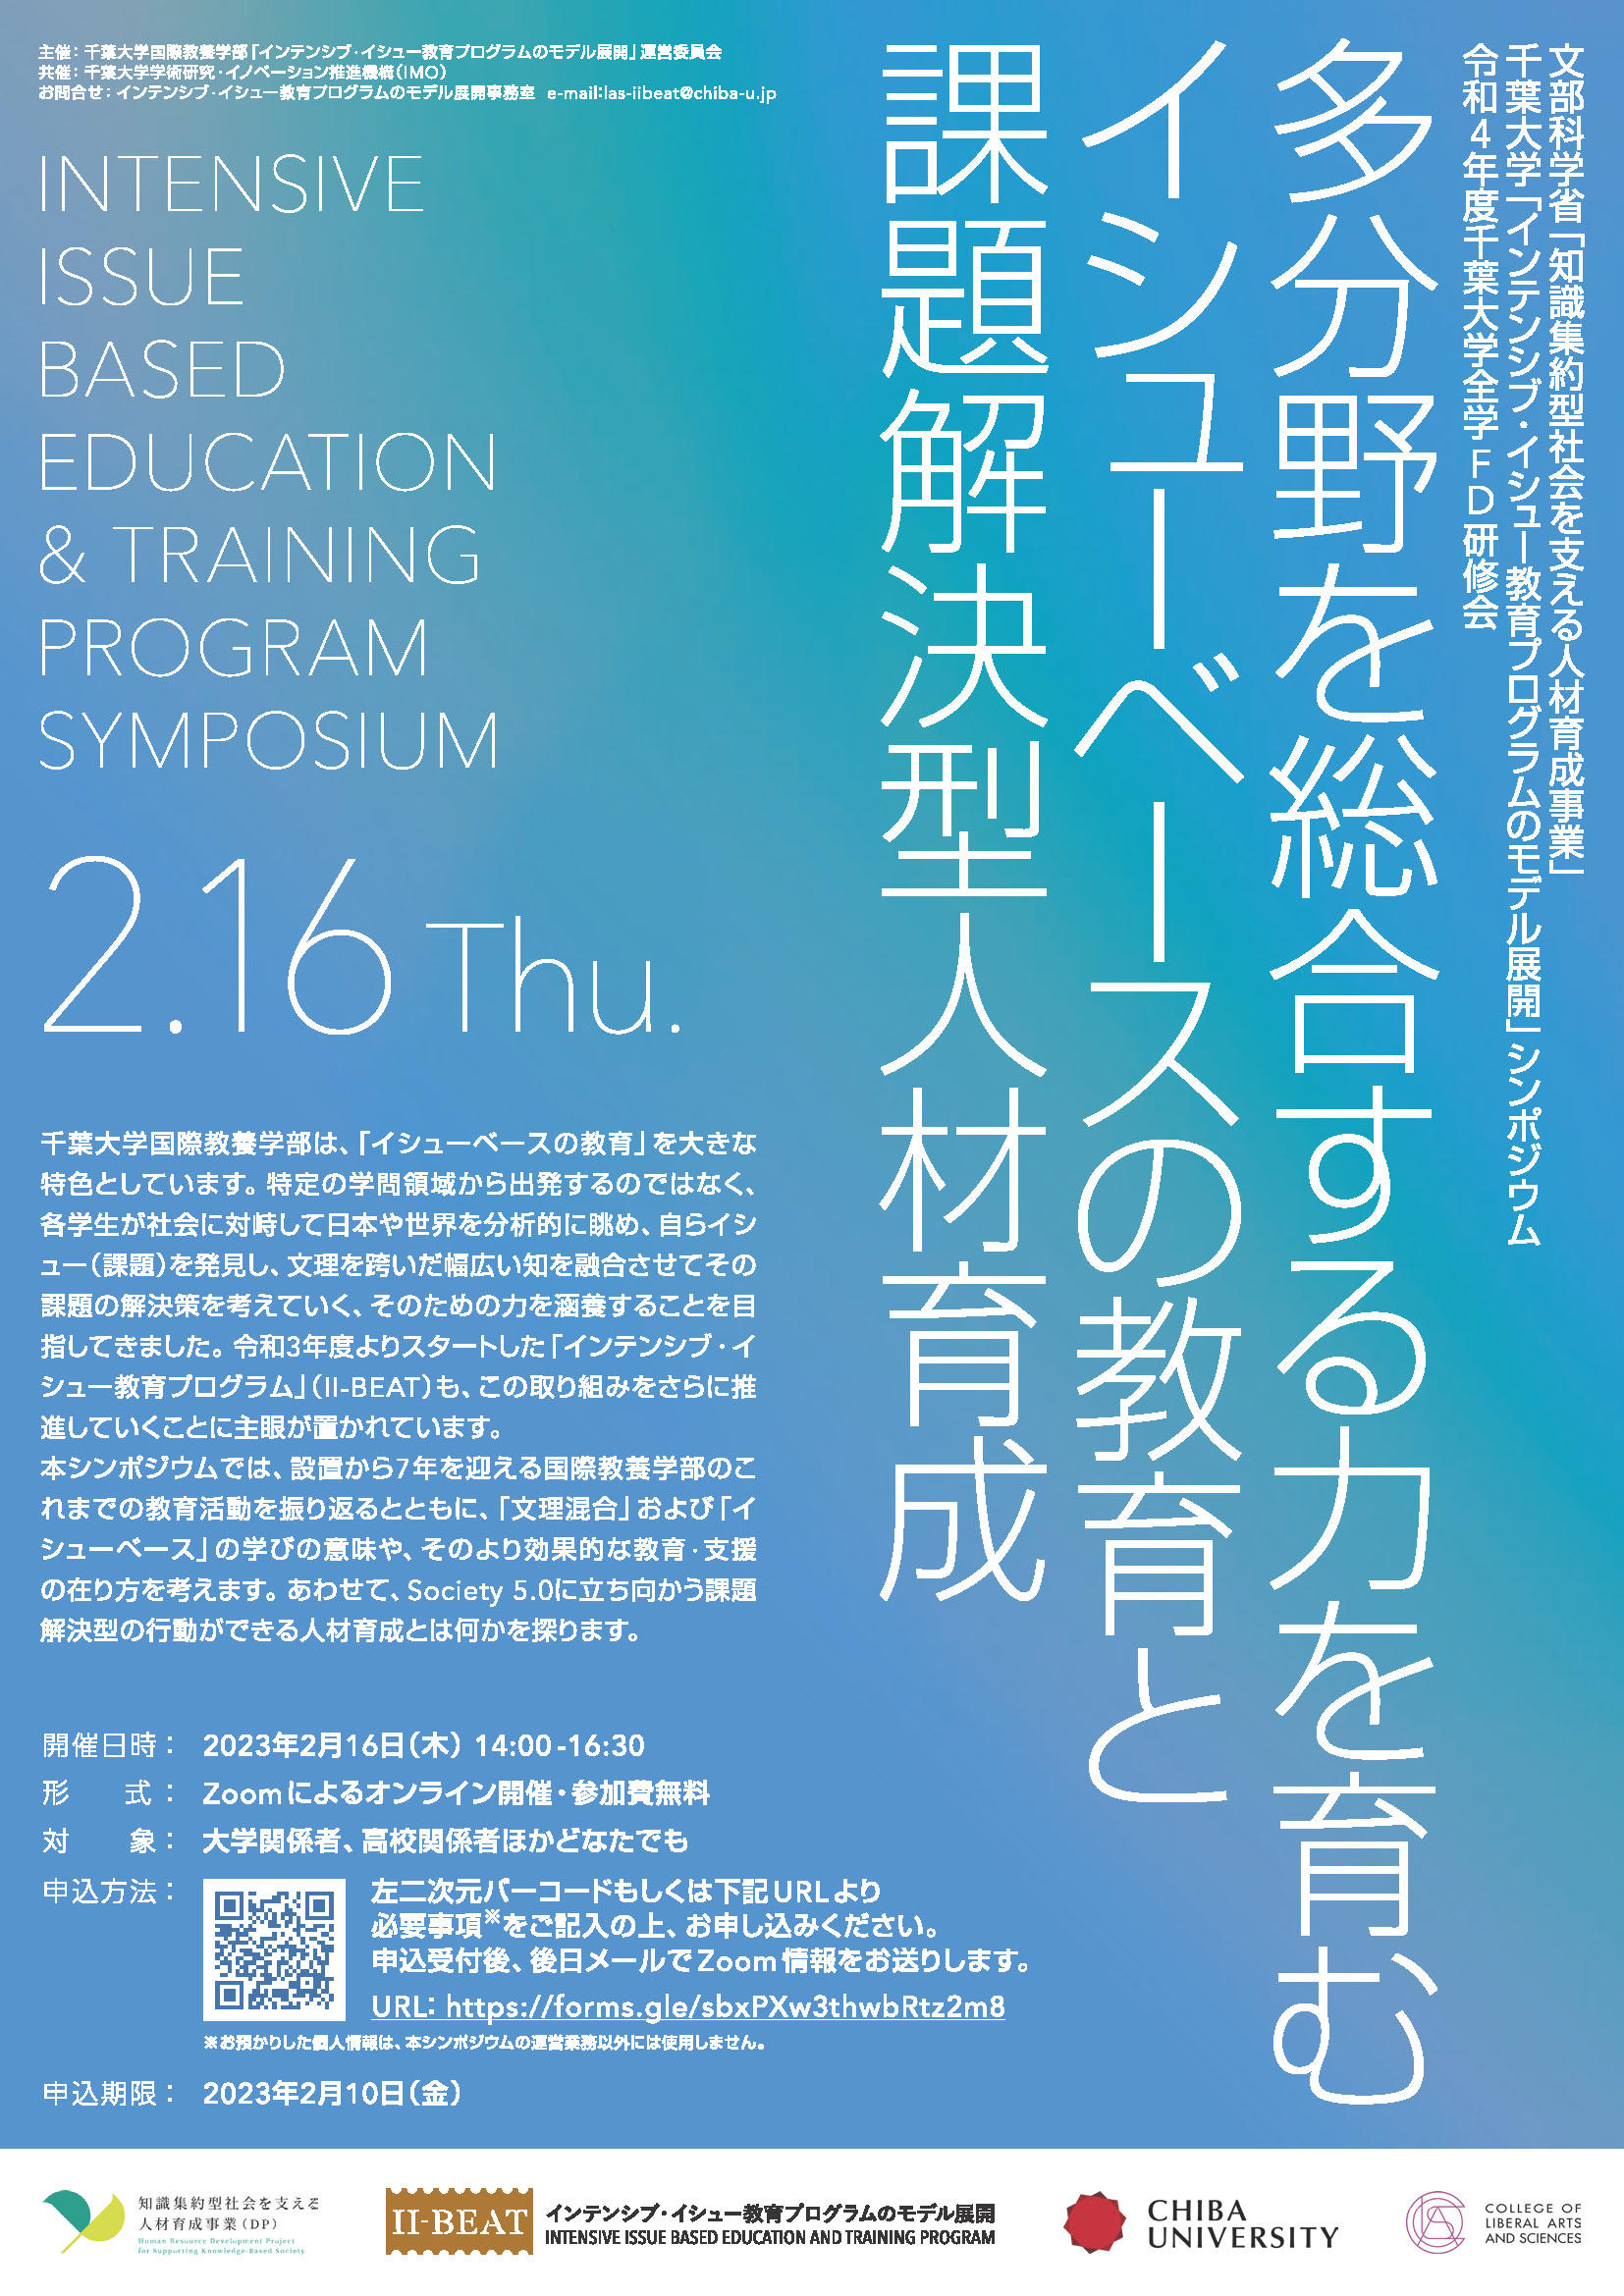 【2/16（木）開催】千葉大学「インテンシブ・イシュー教育プログラムのモデル展開」シンポジウム